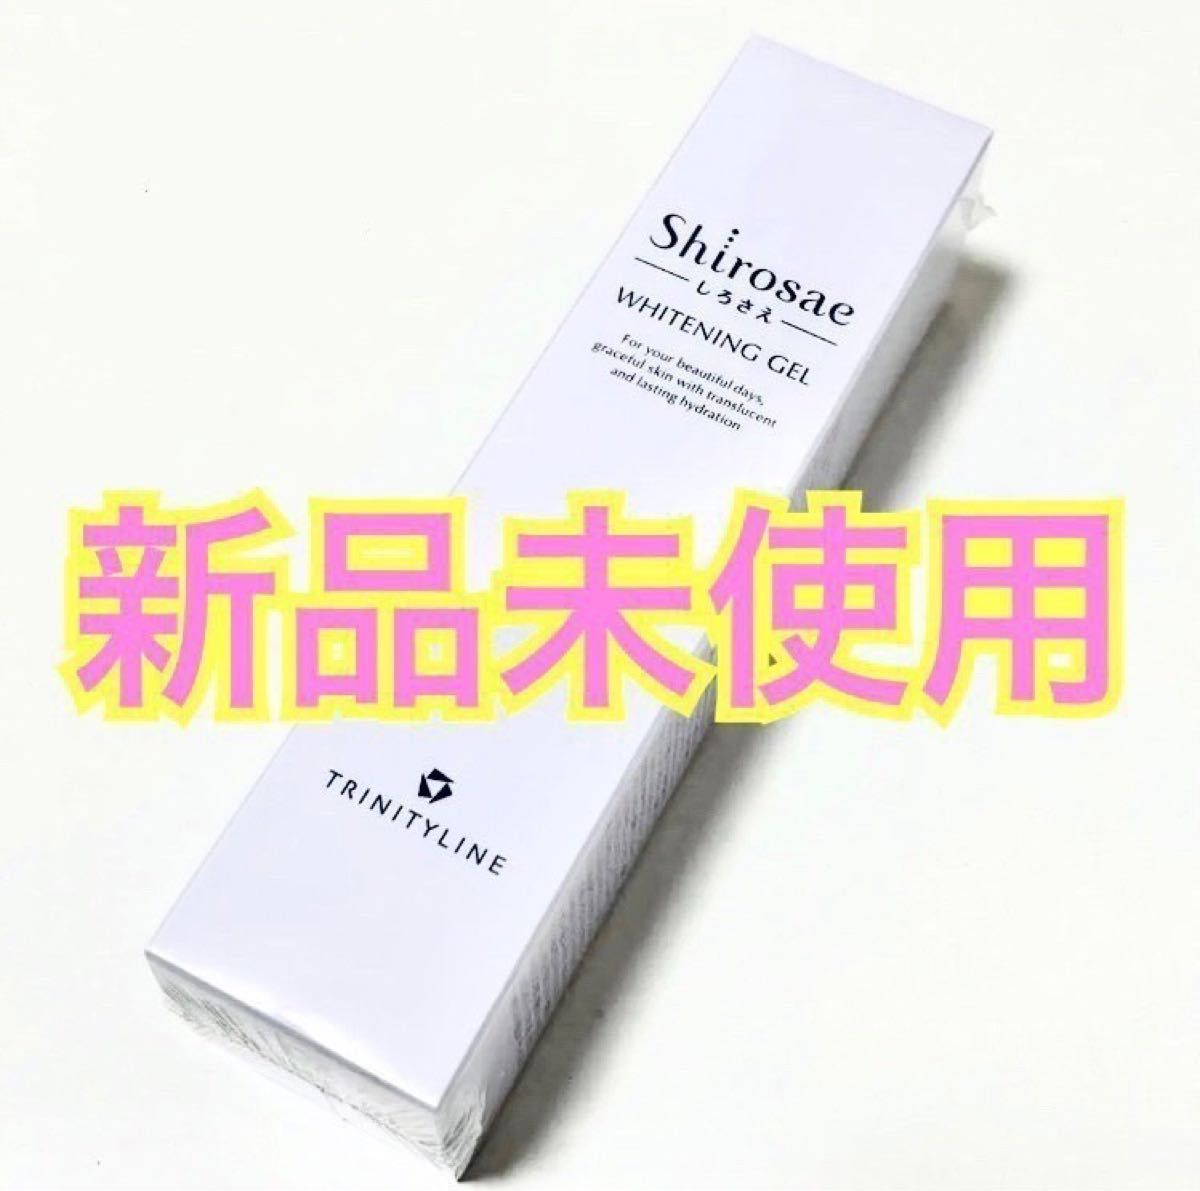 シロサエ Shirosae オールインワン トリニティーライン 大正製薬 化粧水